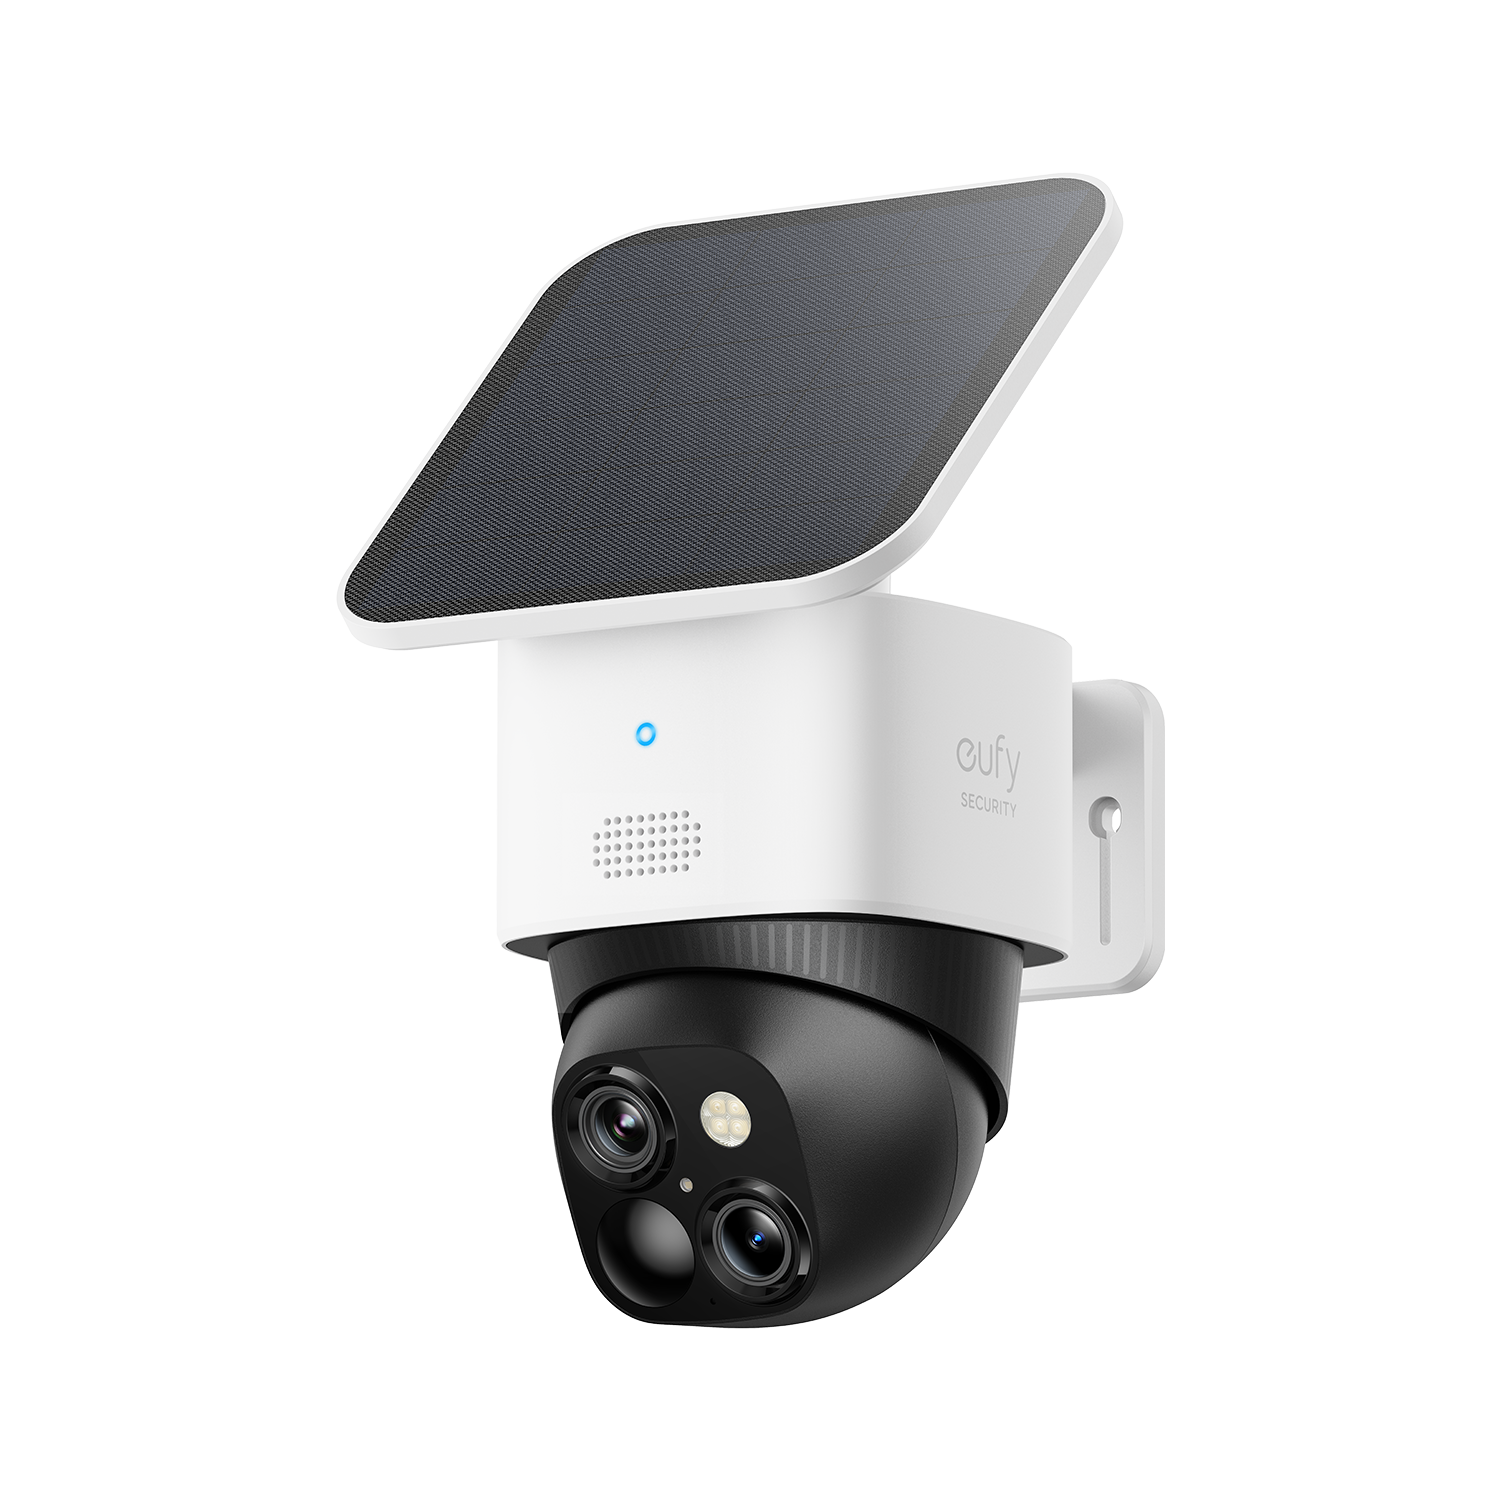  eufy Security Cámara interior S350, cámaras duales, cámara de  seguridad con resolución 4K UHD con zoom de 8 x y PTZ de 360°, IA  humana/mascota, ideal para monitor de bebé/seguridad en